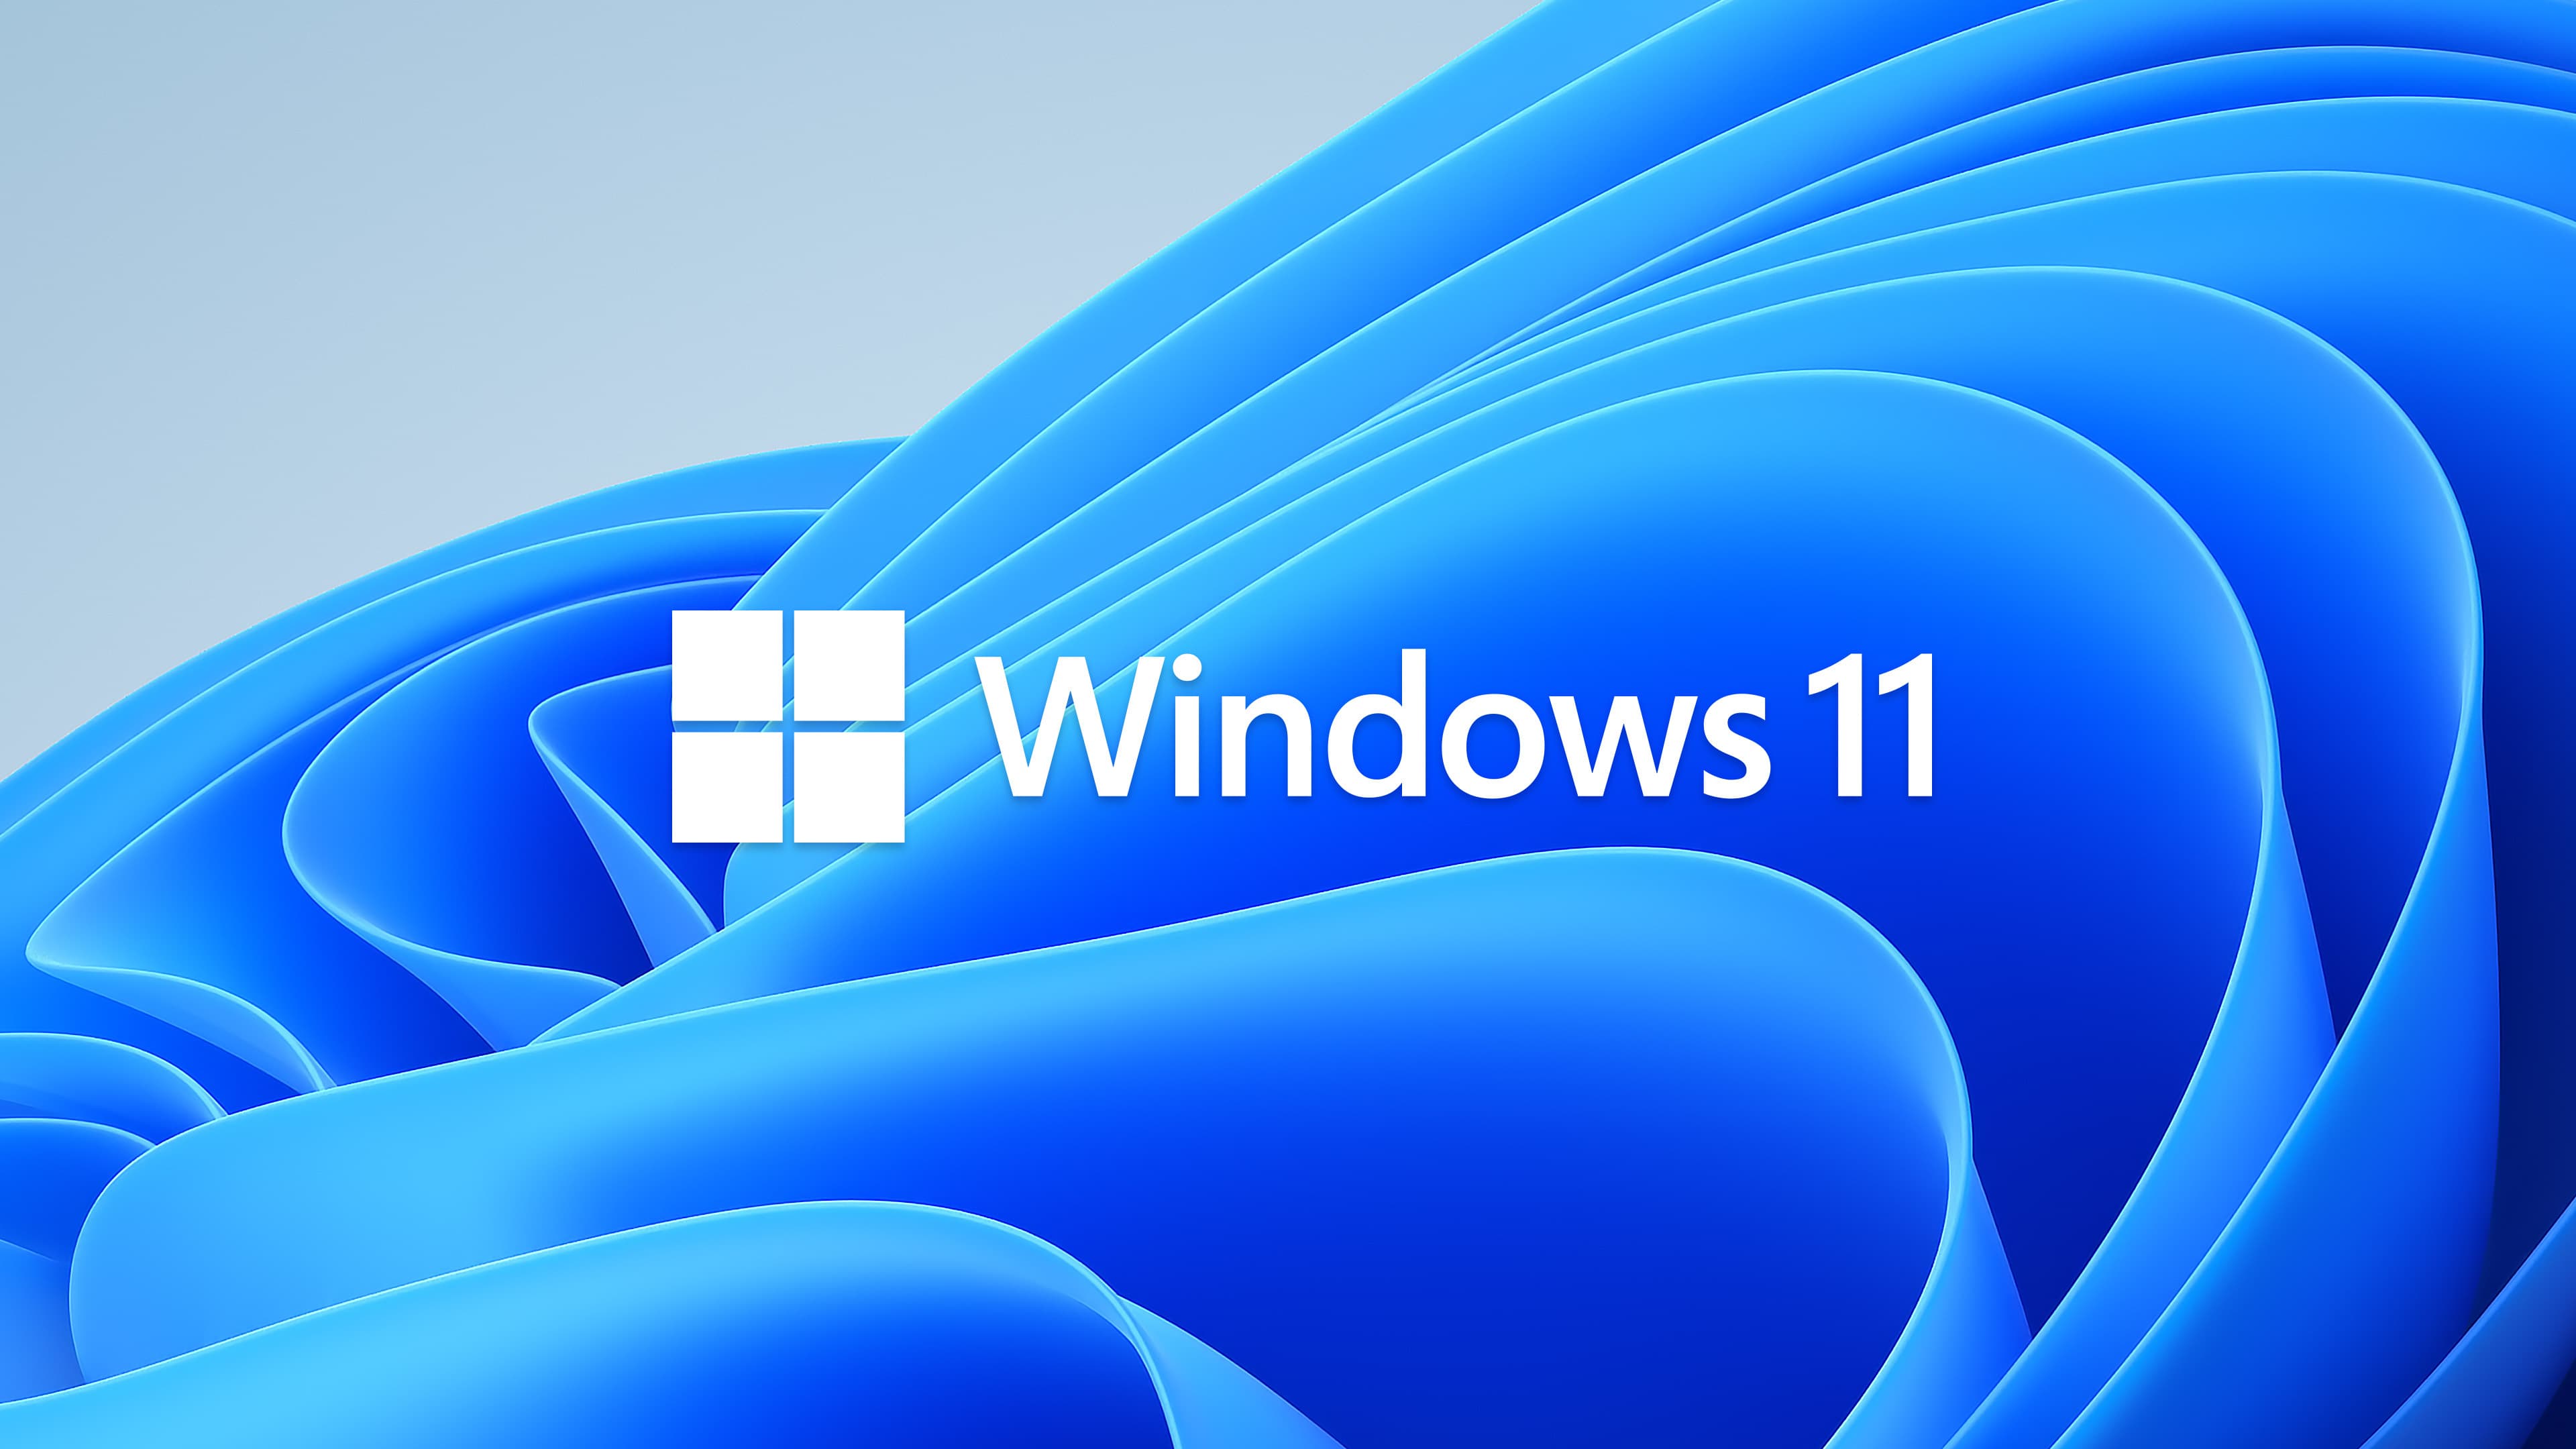 Dit is Windows 11: alles over het nieuwe besturingssysteem